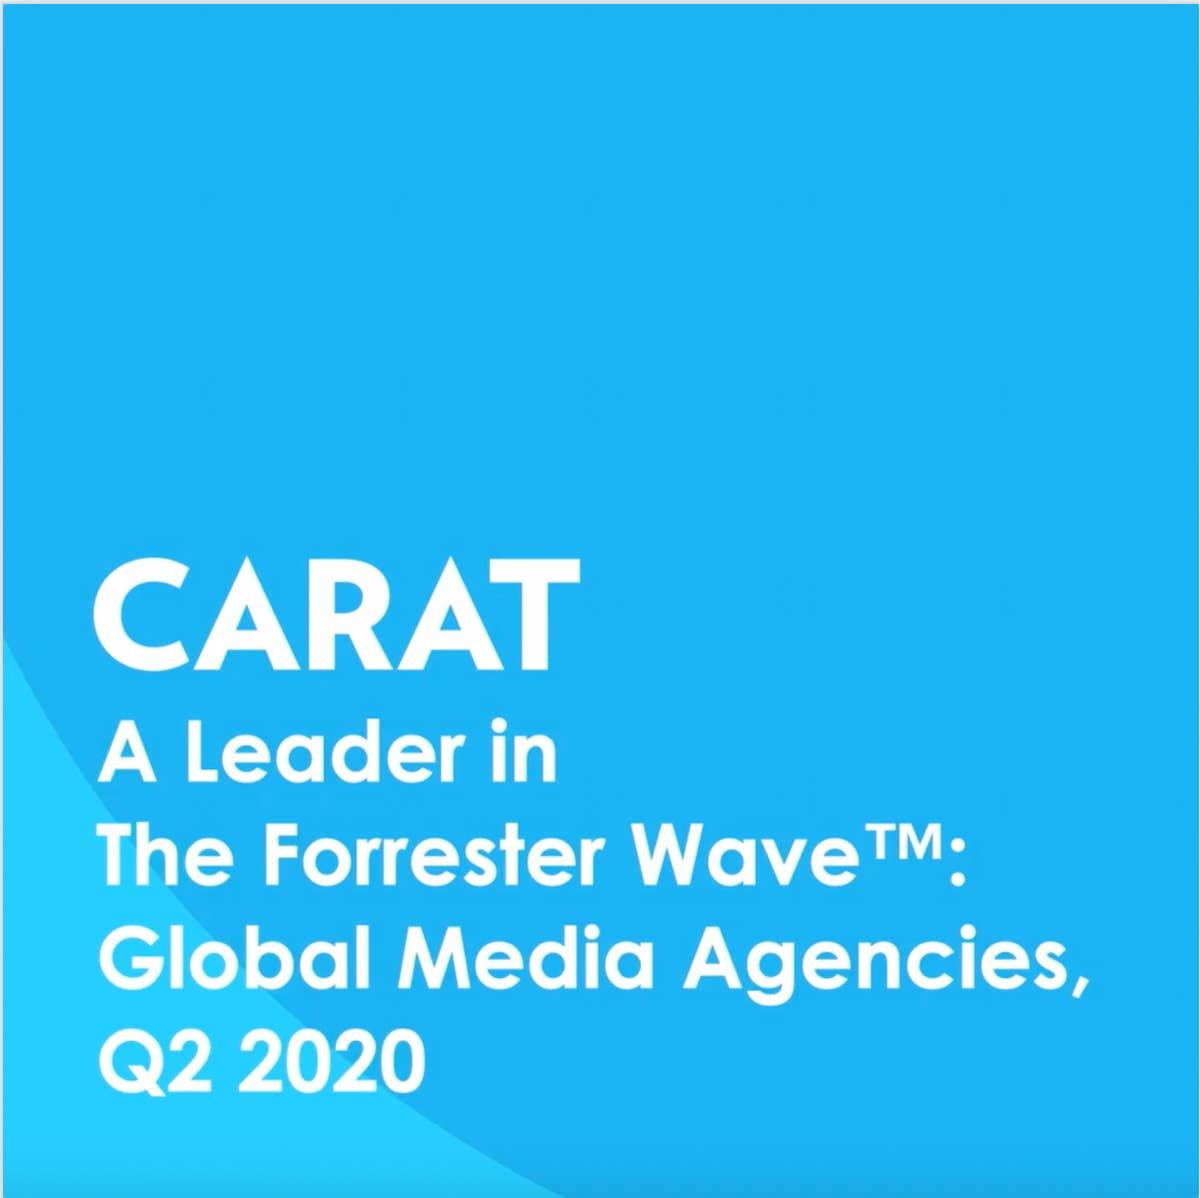 Carat uitgeroepen tot leider onder wereldwijde mediabureaus